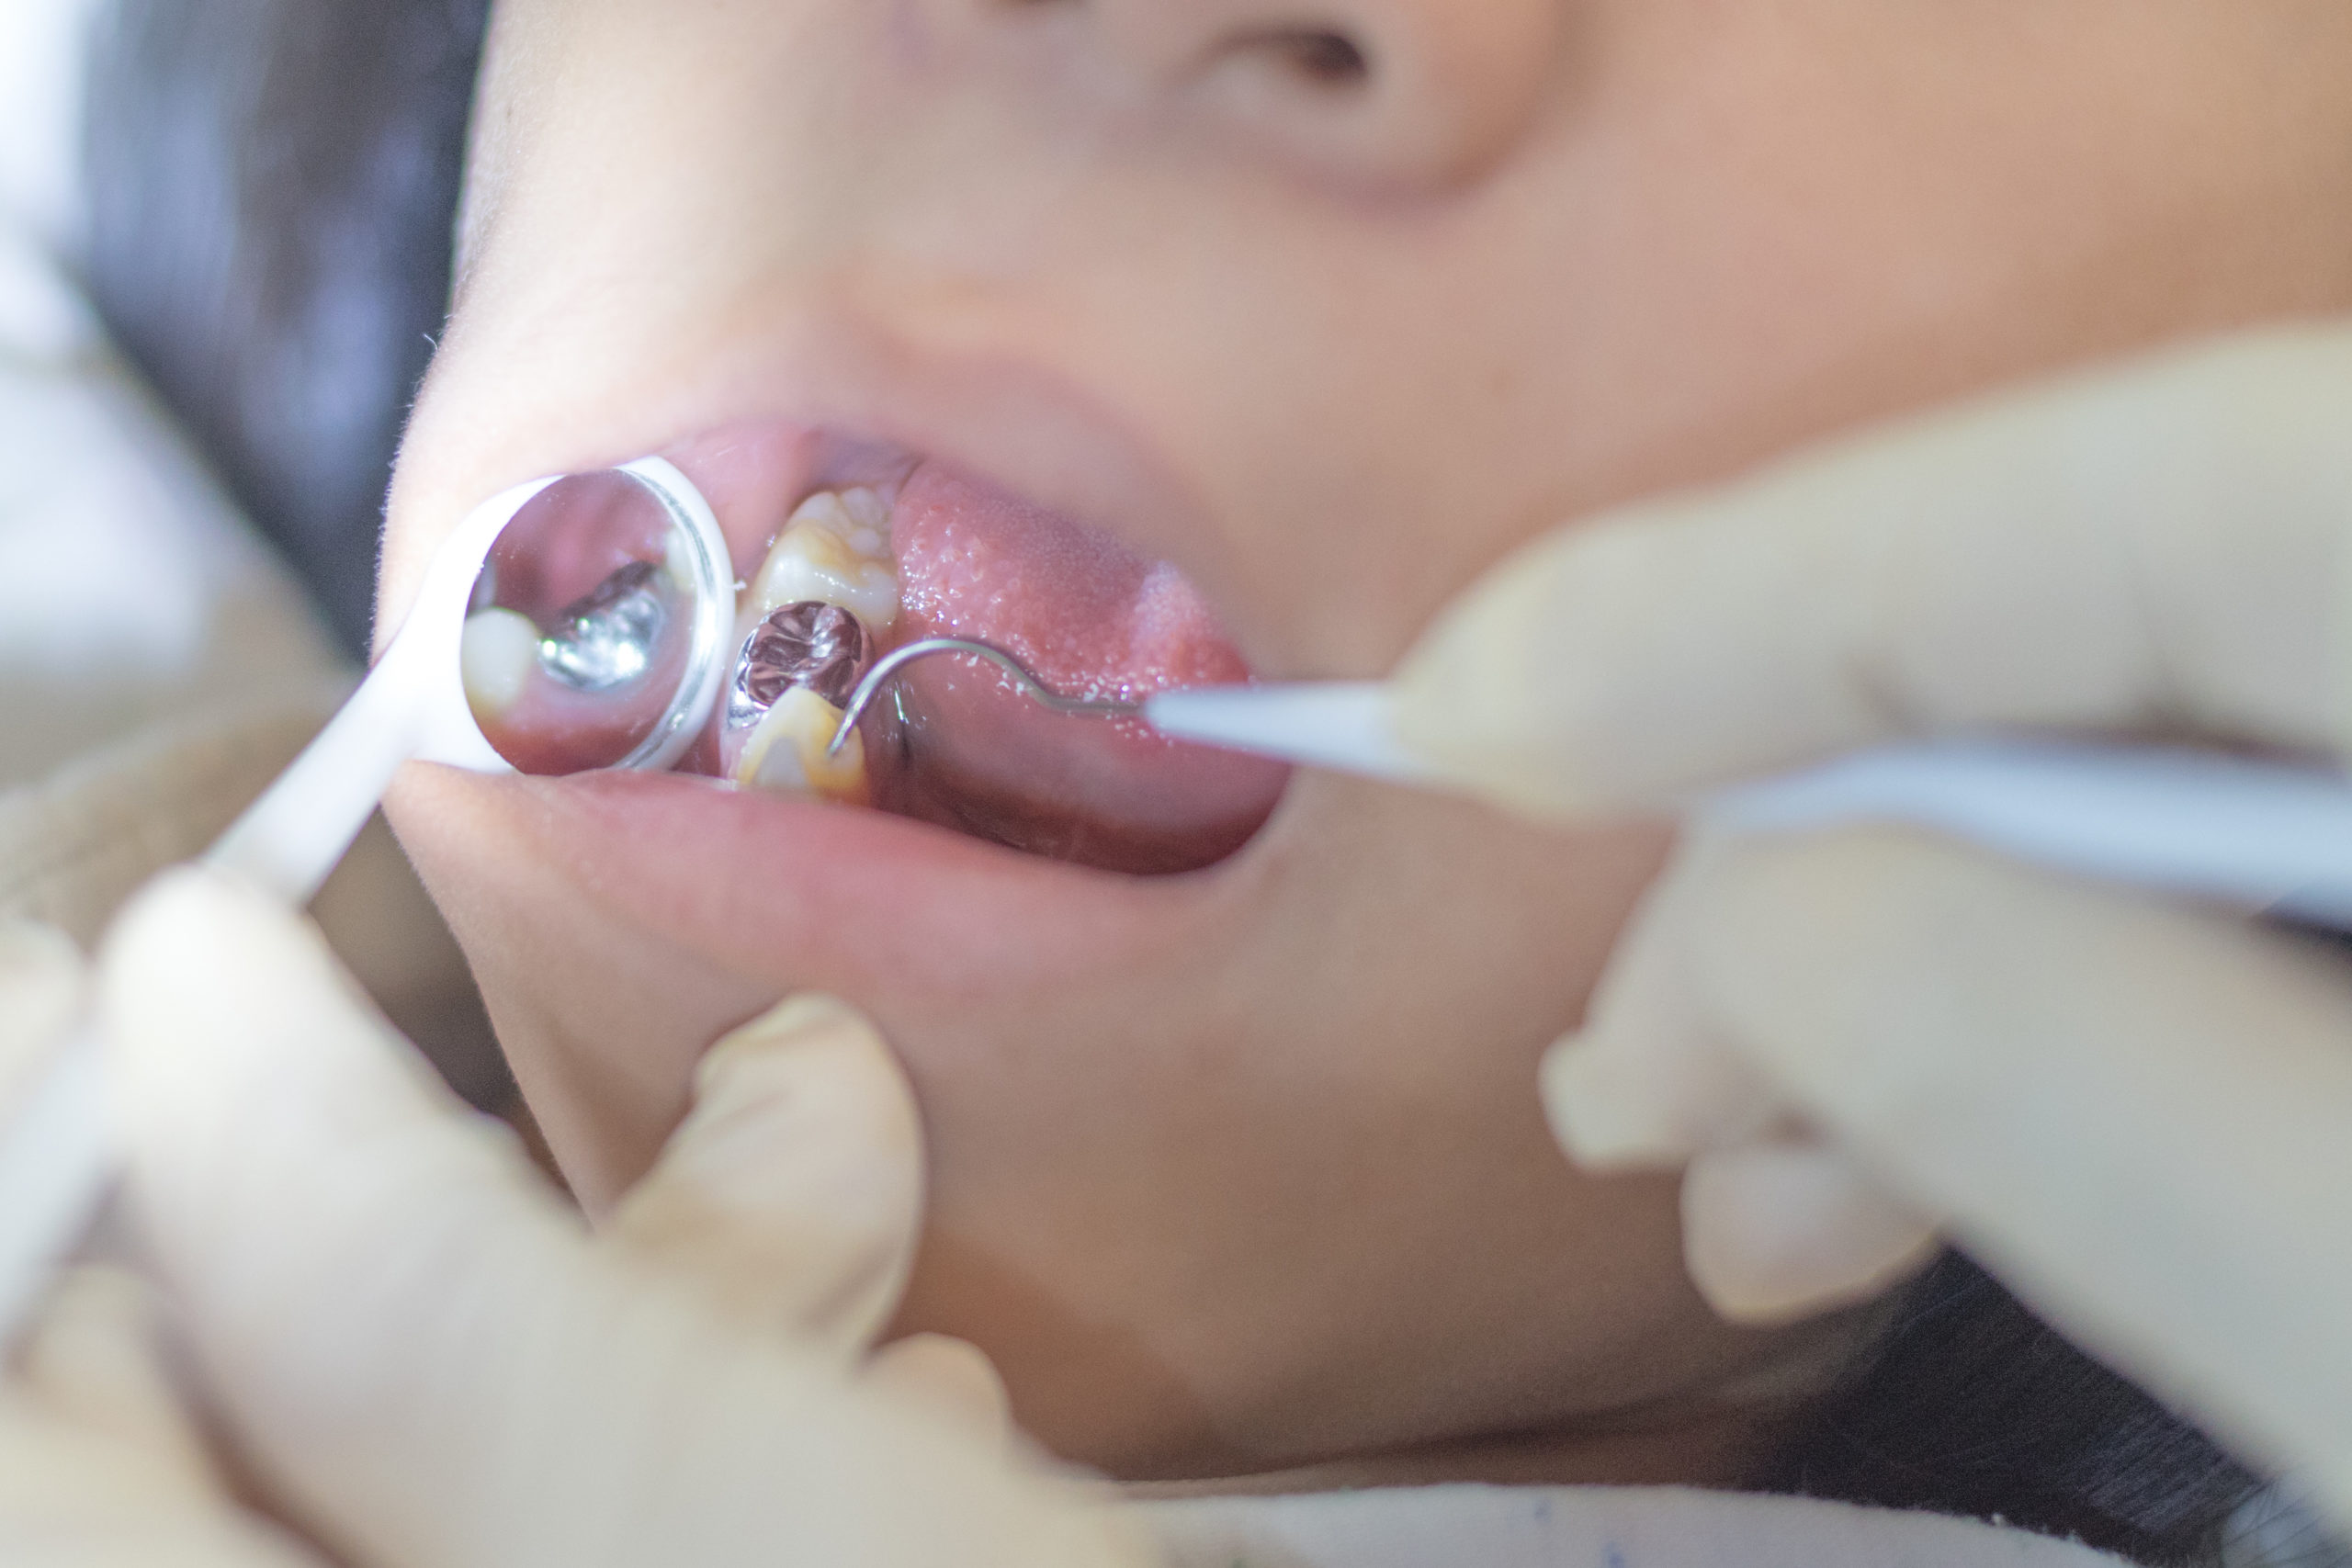 歯科用器具を使って銀歯の状態を確認するところ